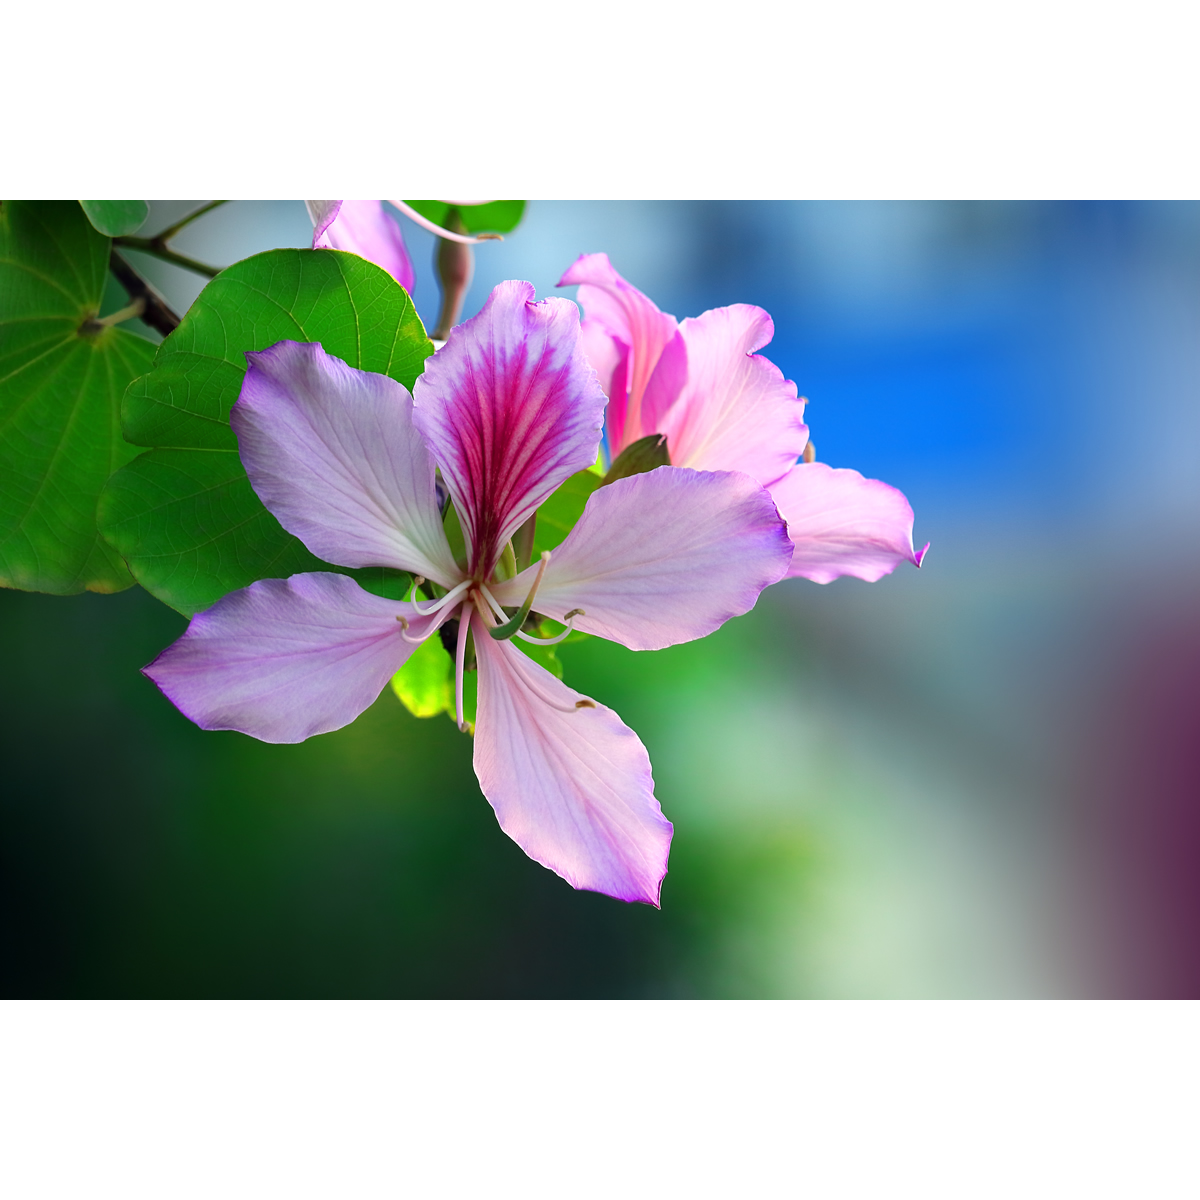 原创花卉摄影作品-紫荆花/羊蹄甲(1张) 高清设计素材原图